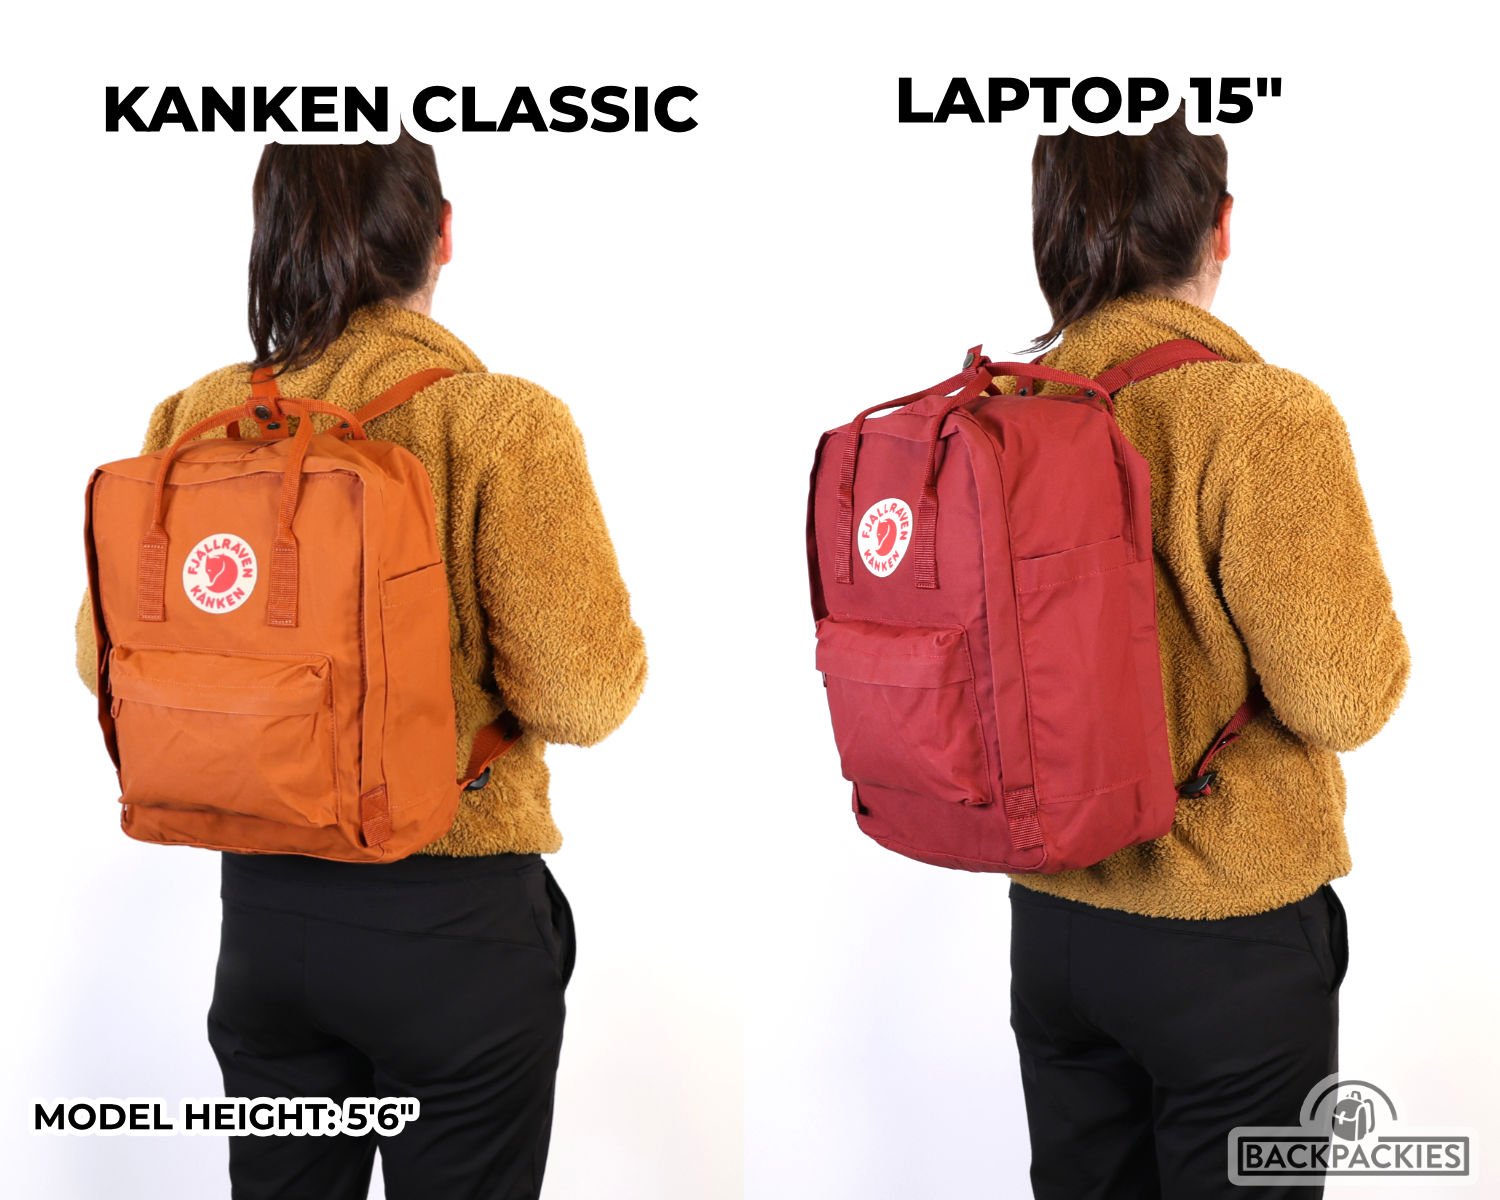 Voorwaardelijk Uithoudingsvermogen lichten Fjallraven Kanken Classic vs Kanken Laptop (13", 15", 17") - What's the  difference? | Backpackies